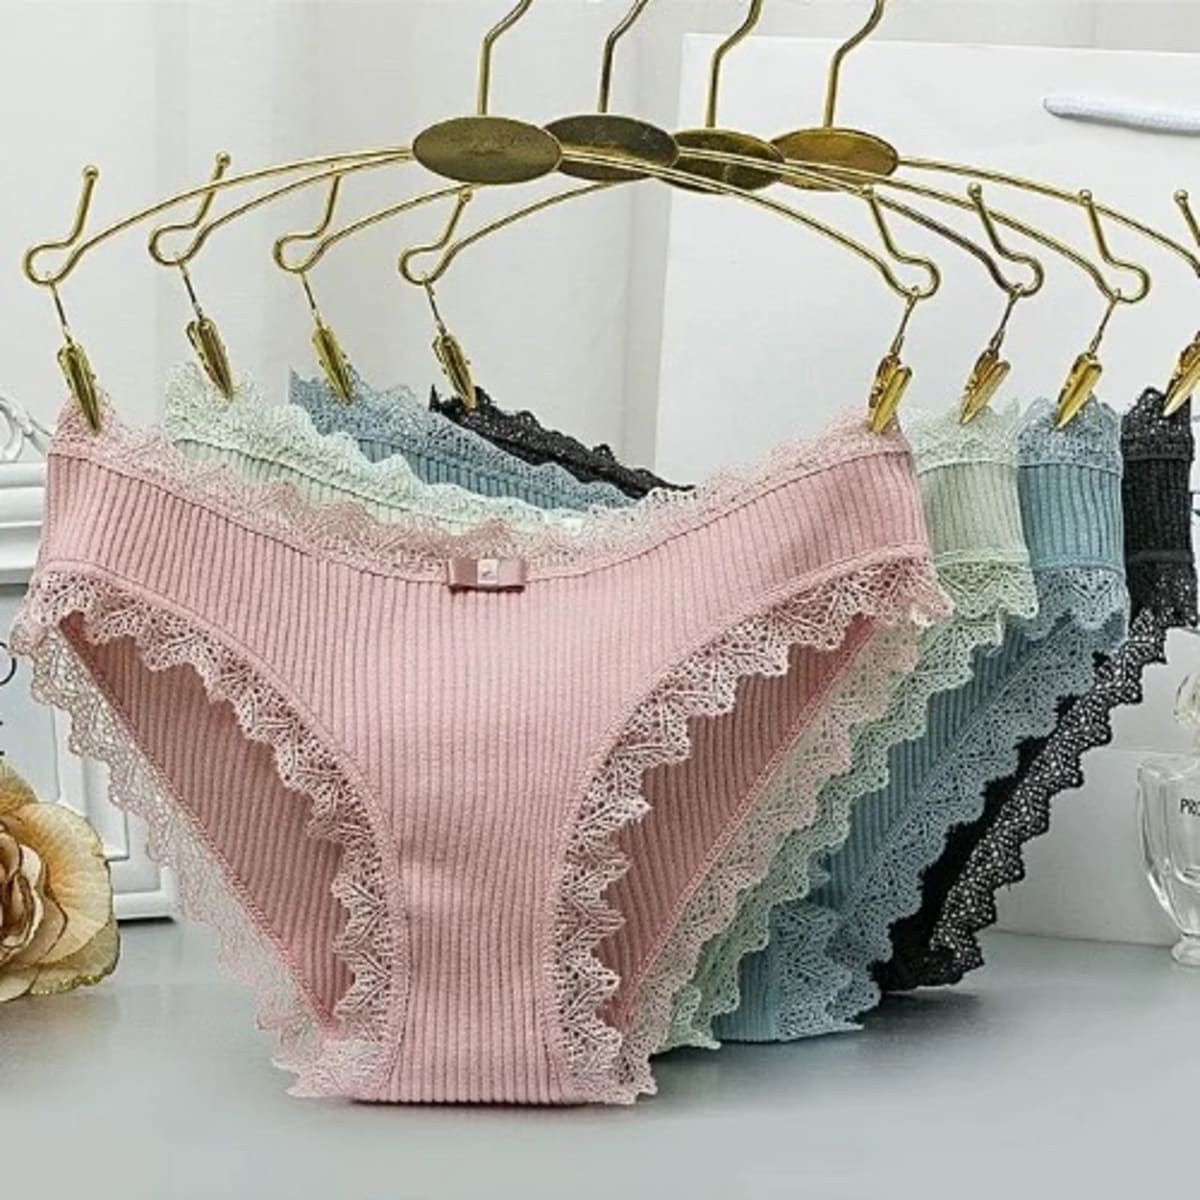 Lace Trim Cotton Panties - 5 Pieces